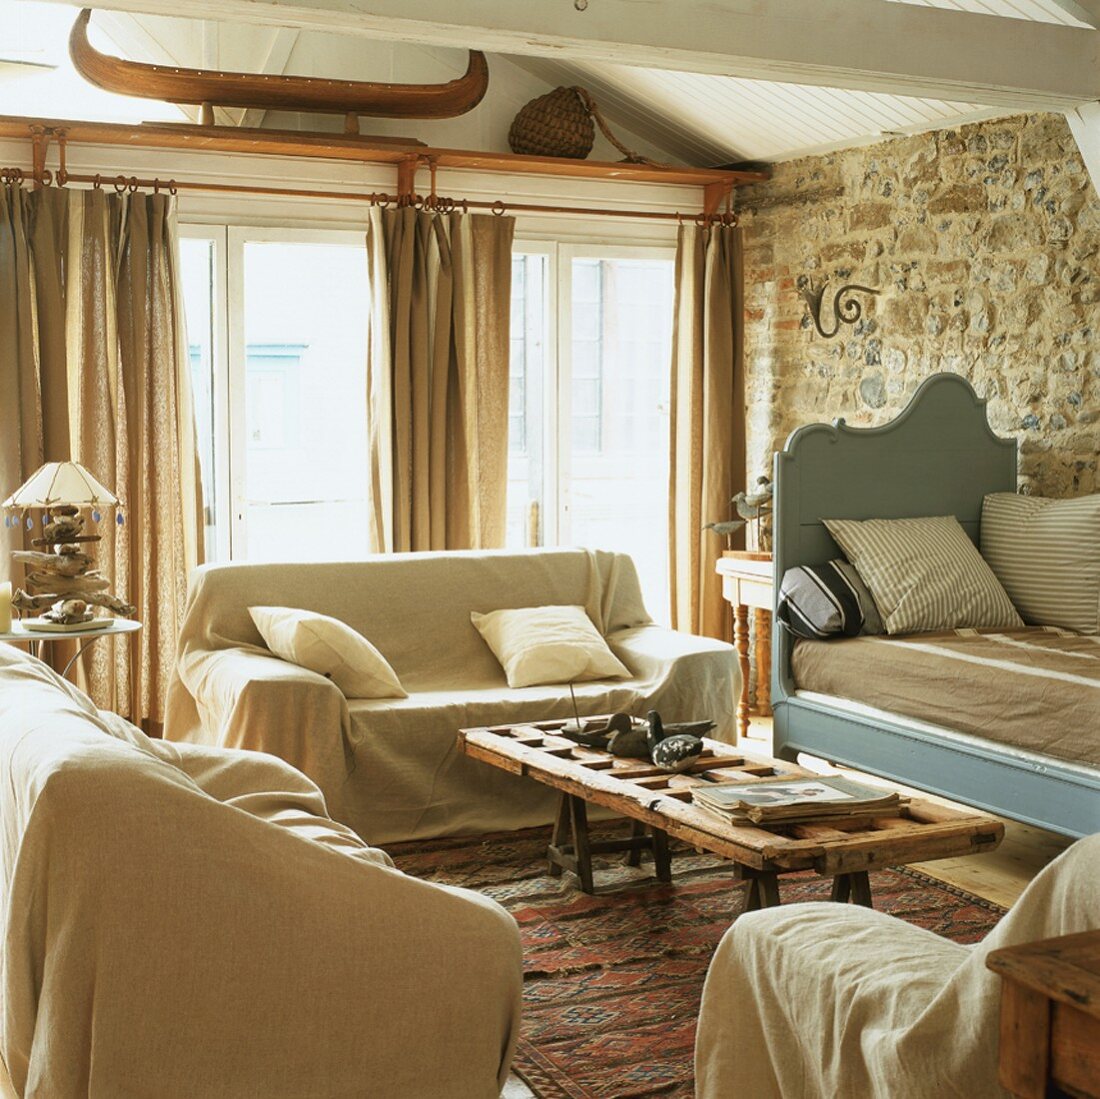 Rustikale Gemütlichkeit in einem Wohnzimmer mit Natursteinwand und weisser Holzbalkendecke